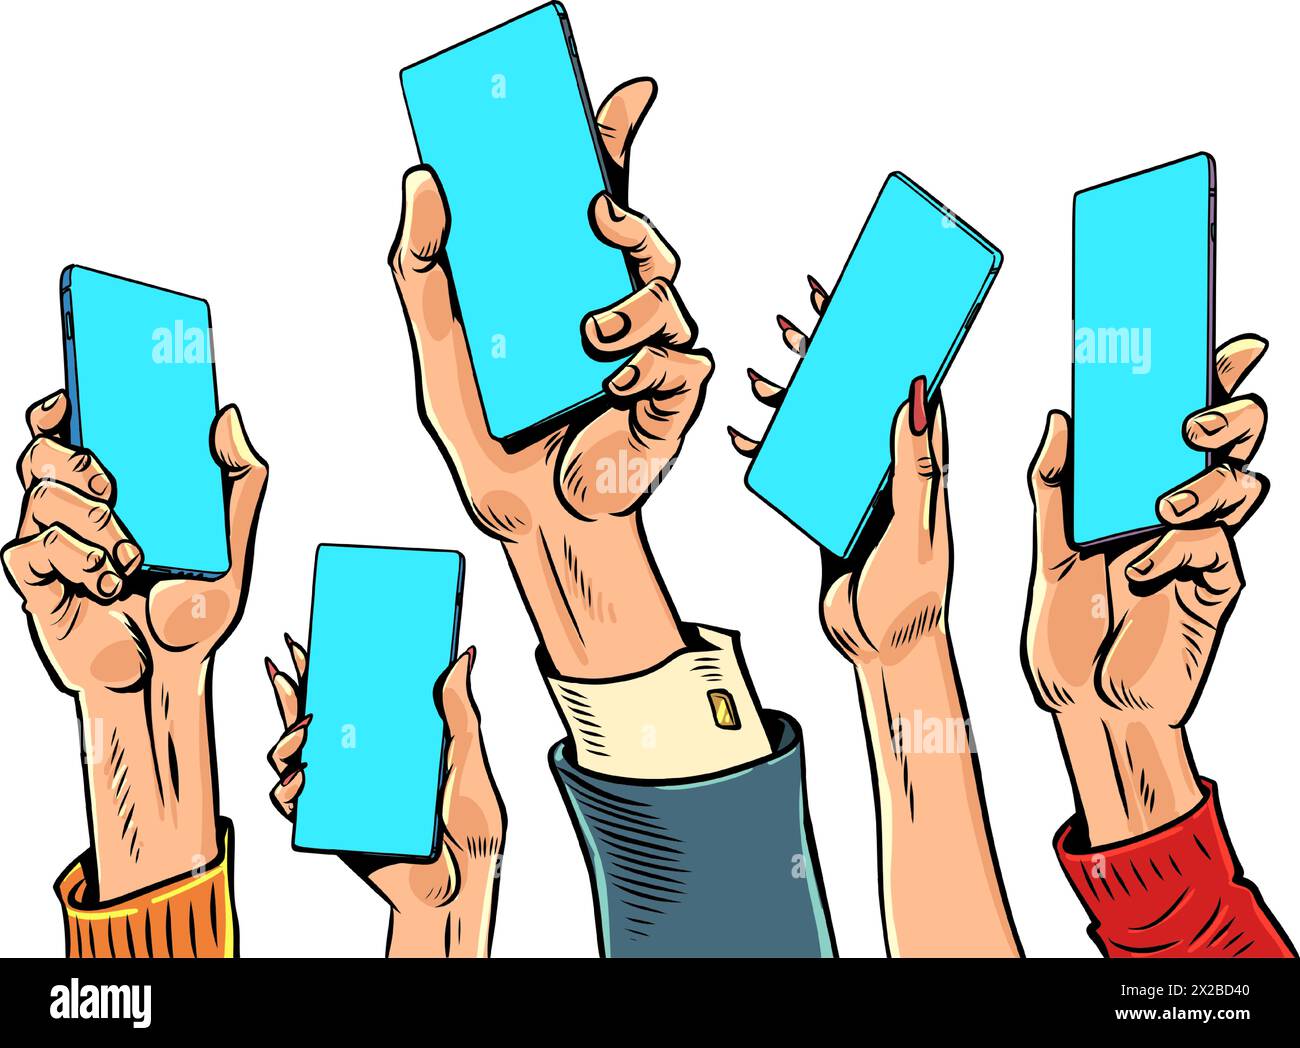 Les gens lèvent la main avec des téléphones. Espace vide pour le texte. Marché mondial des intérêts. Dessin à la main de dessin animé pop art rétro illustration vectorielle. Illustration de Vecteur